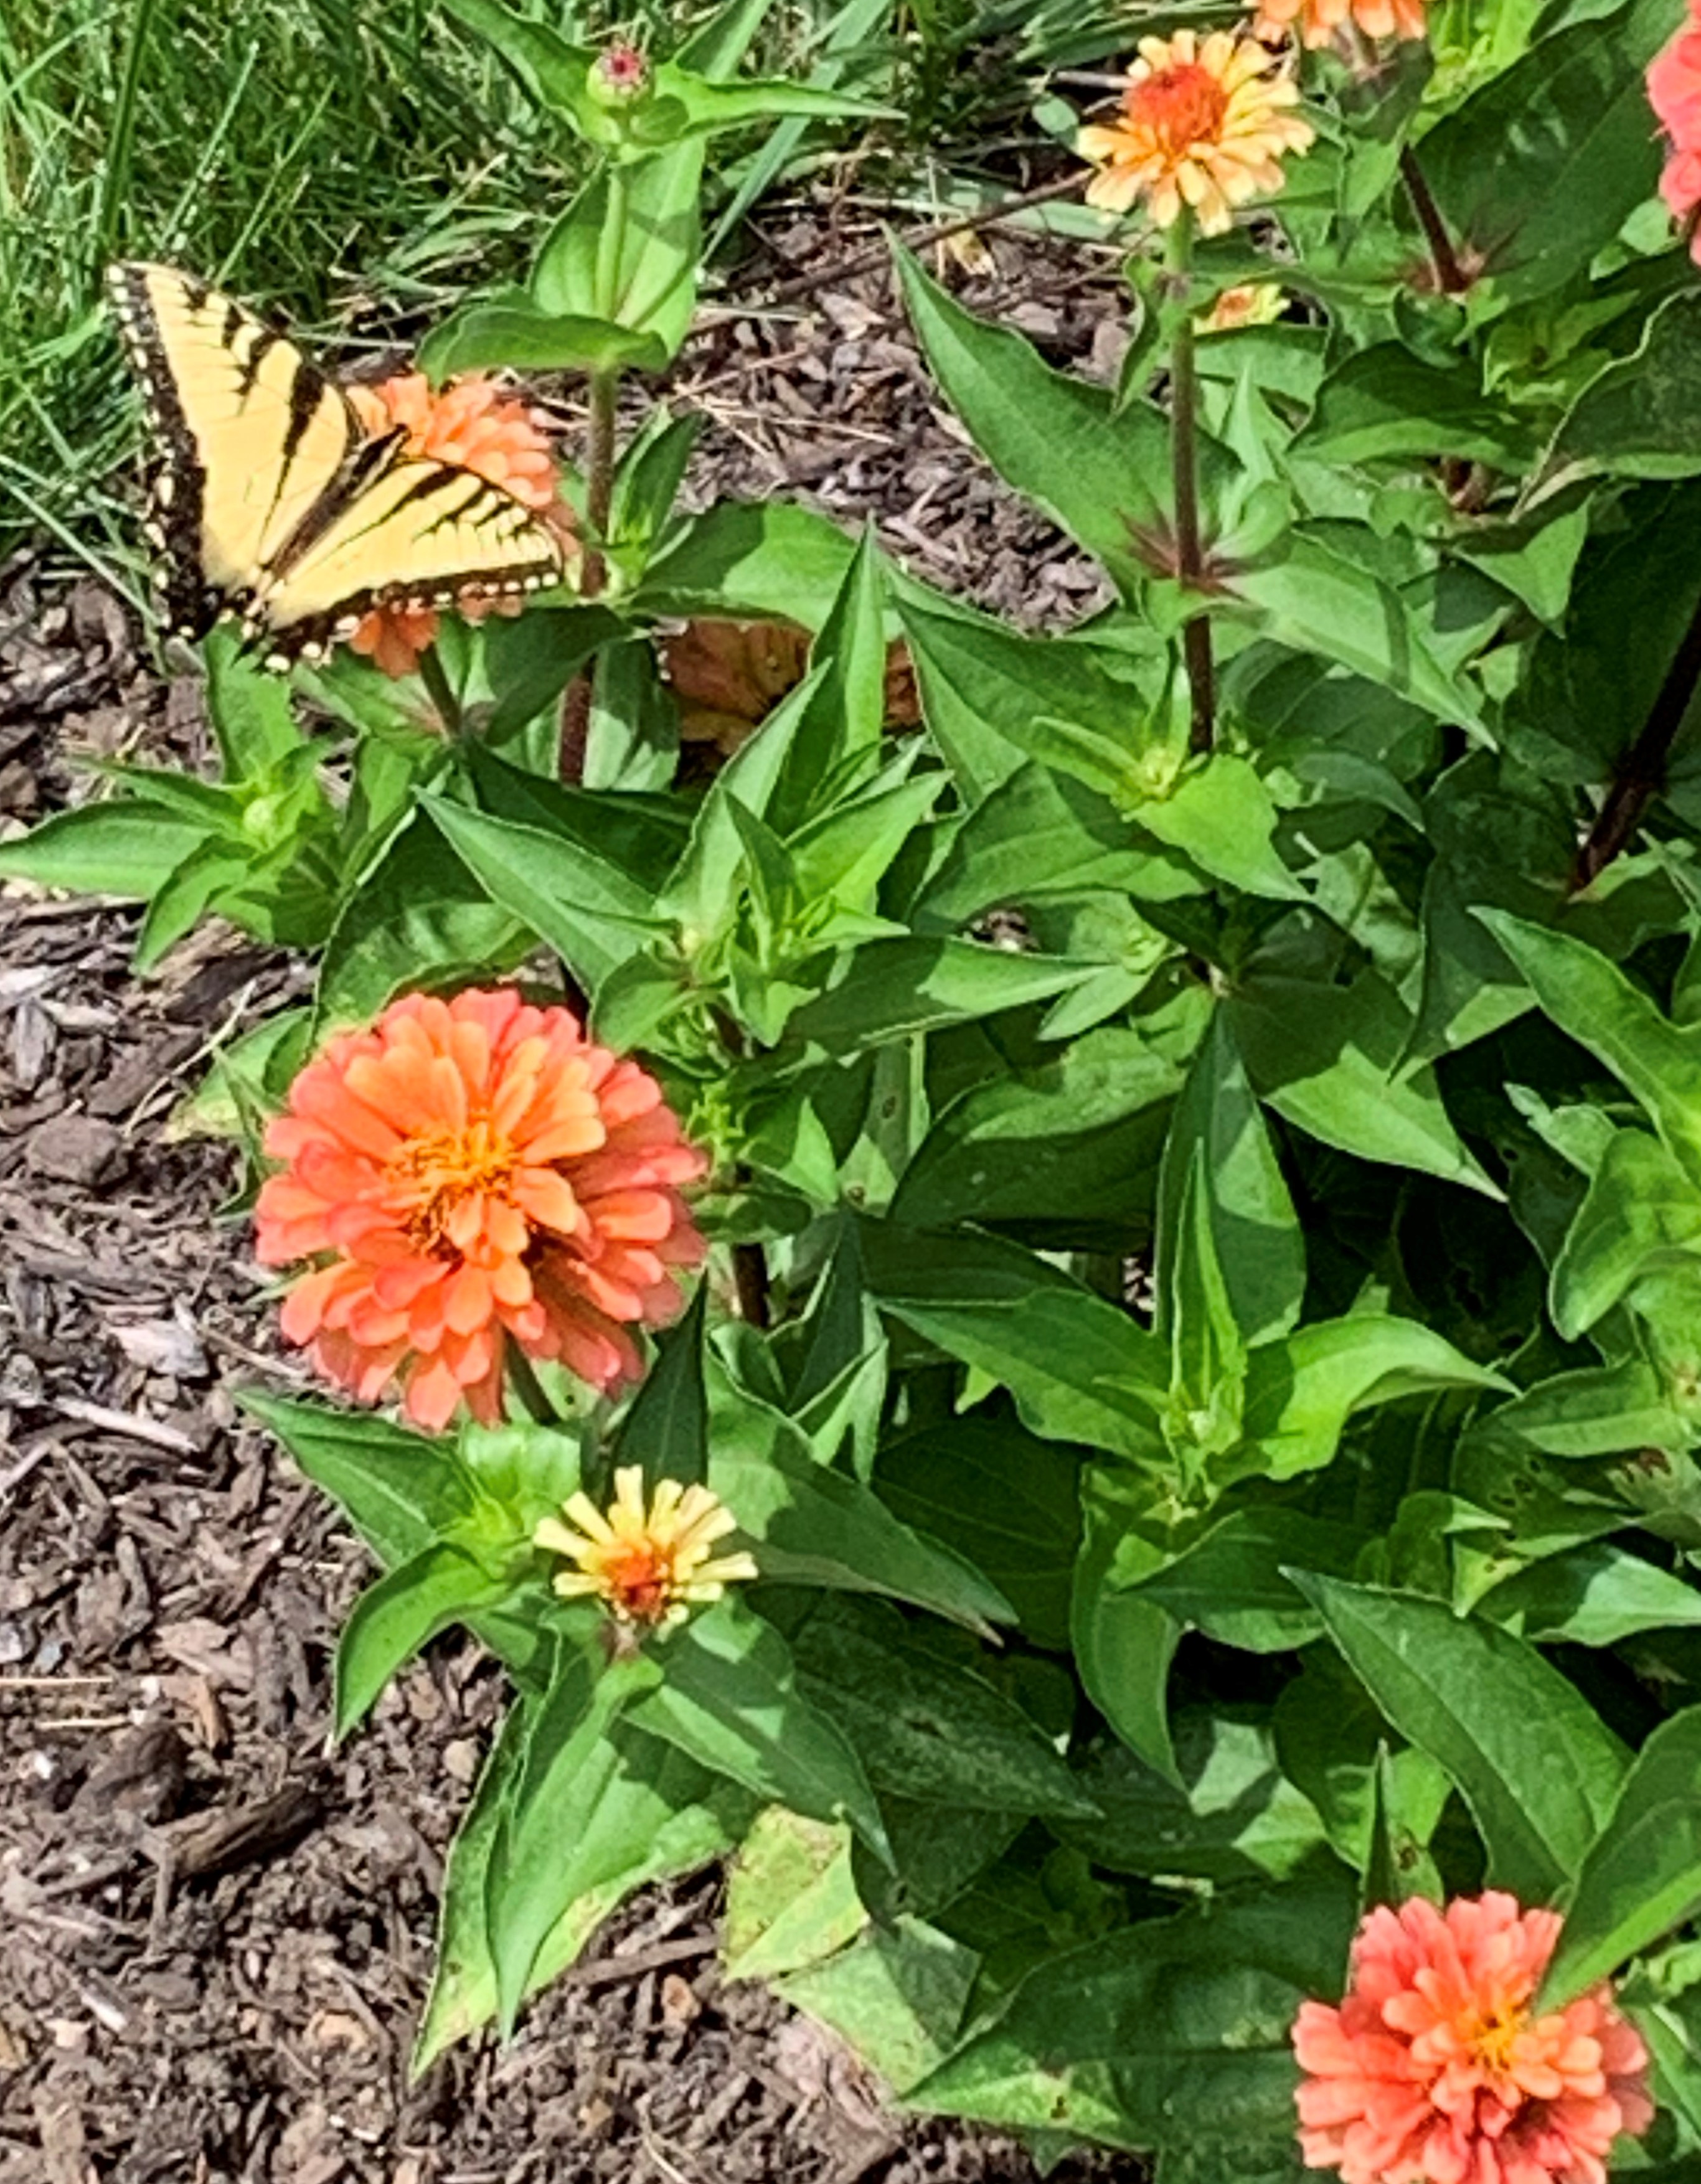 Butterfly in our butterfly garden